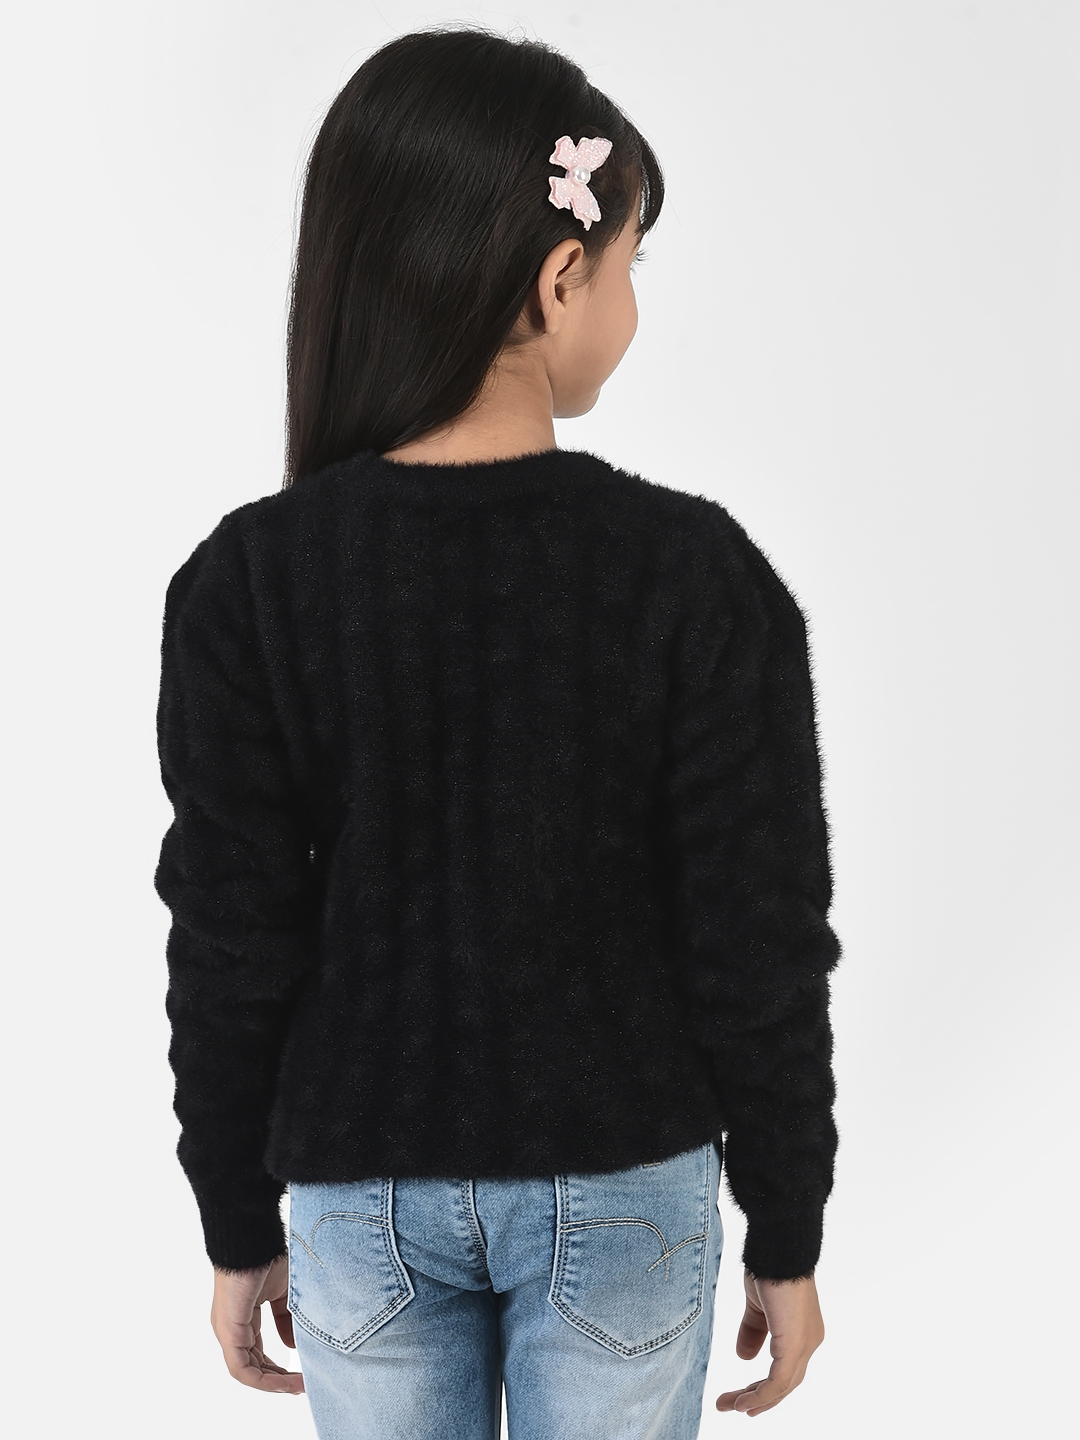 Crimsoune Club | Crimsoune Club Girls Black Sweater in Self-Designed Print 1